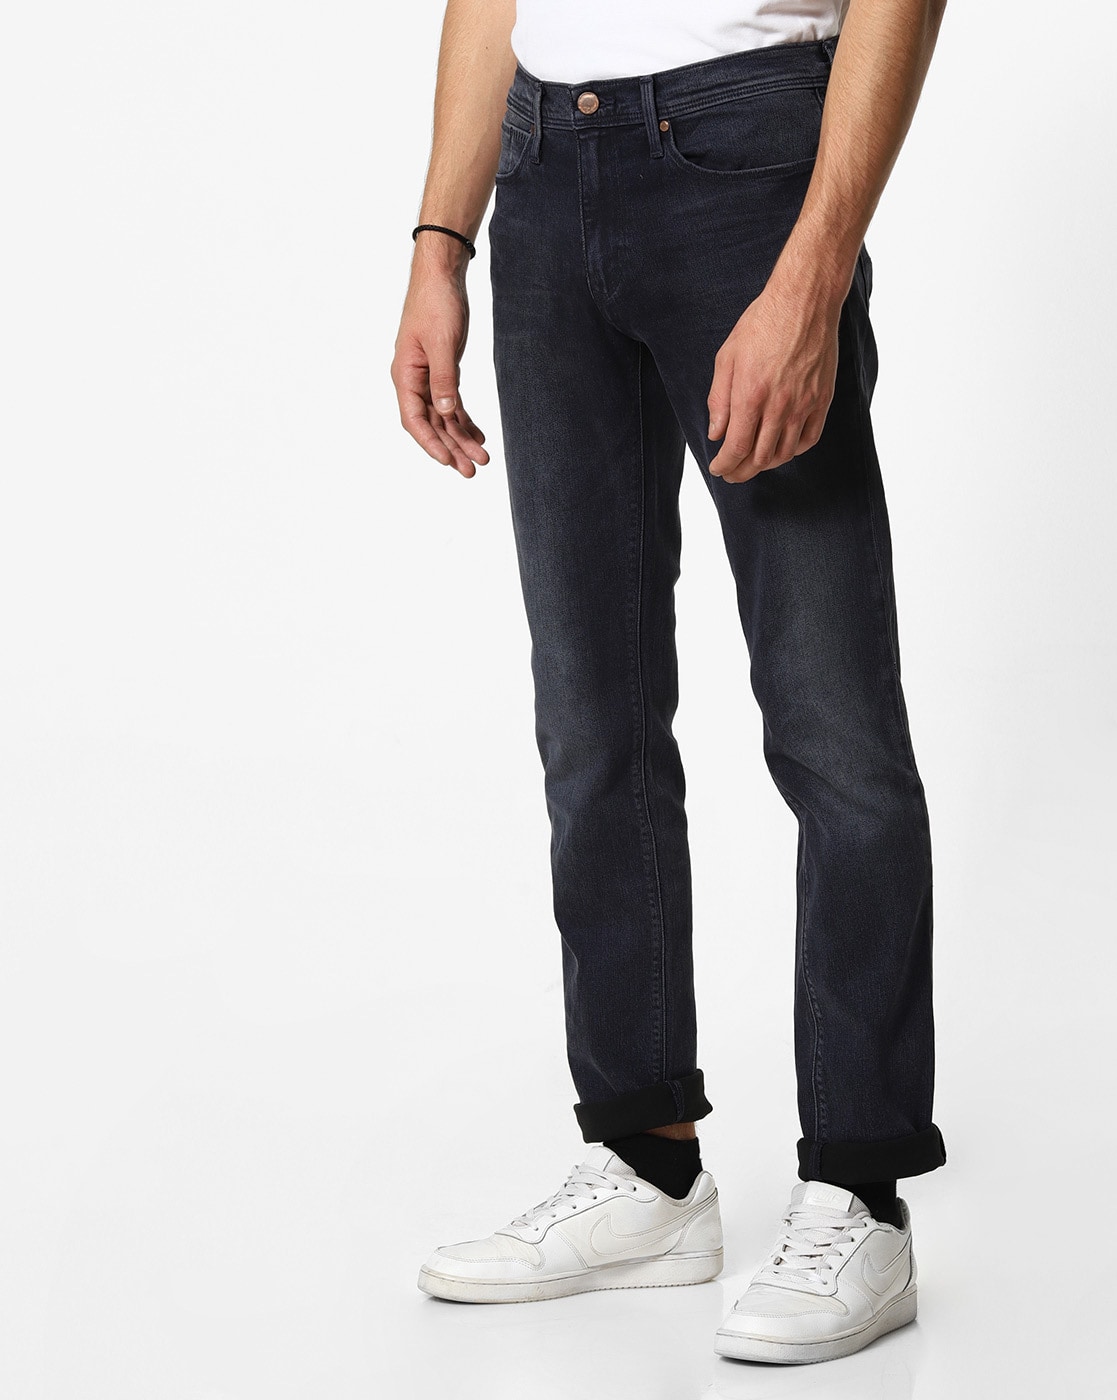 navy blue levis jeans